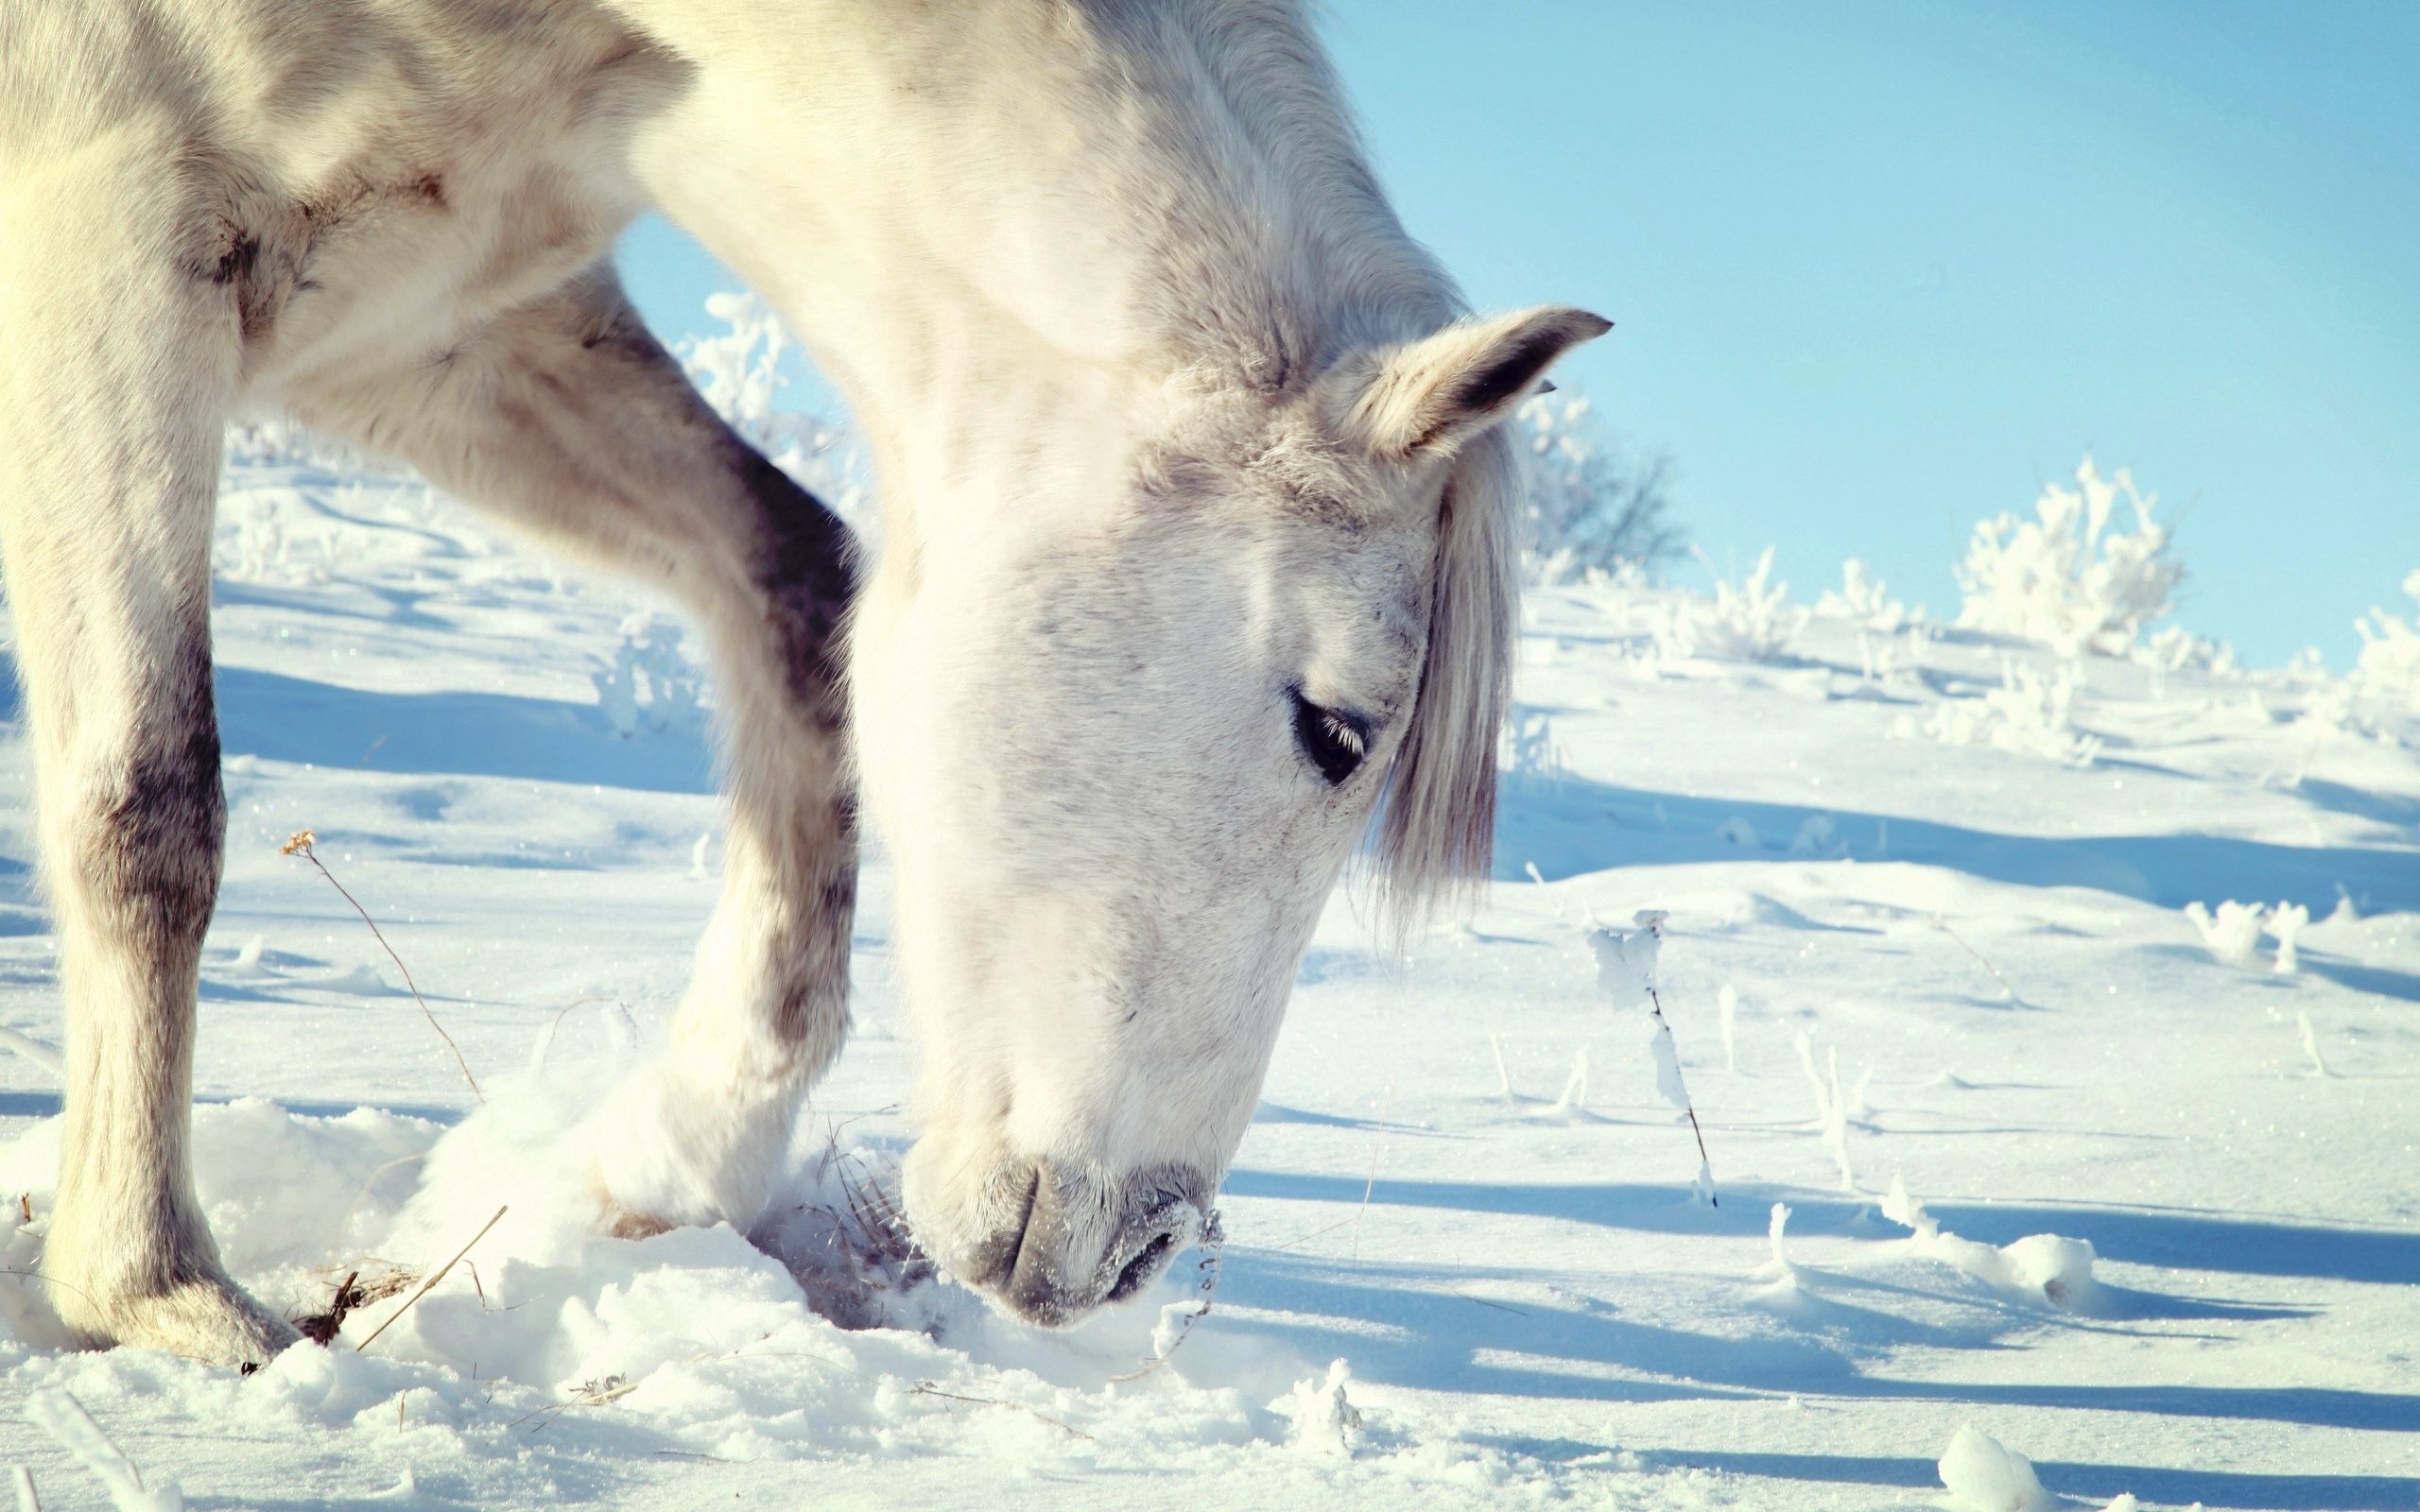 Скачать обои бесплатно Снег, Голова, Животные, Лошадь картинка на рабочий стол ПК